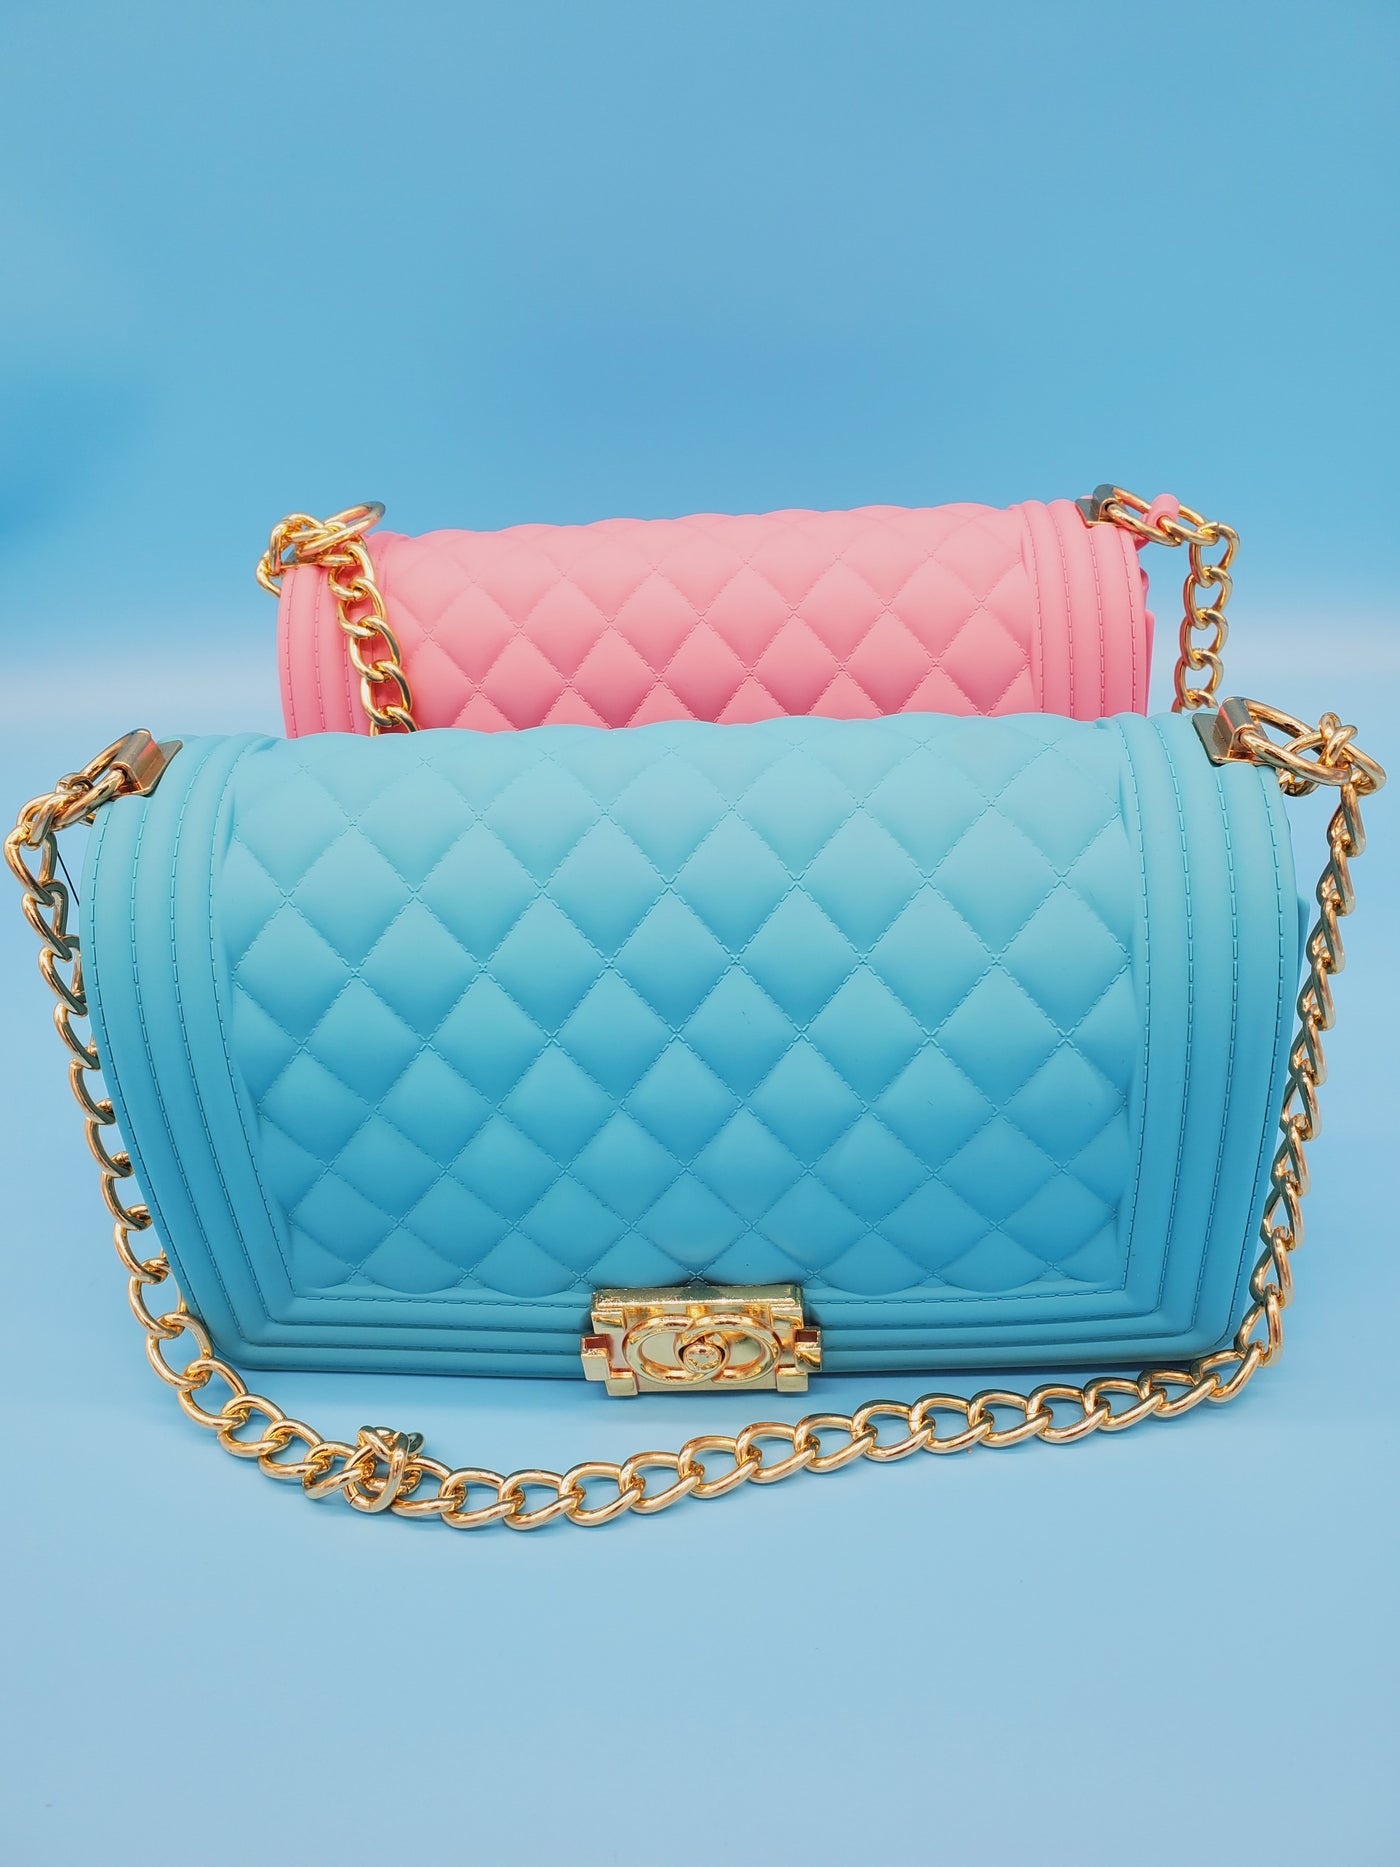 Fashion Jelly Handbag/Clutch